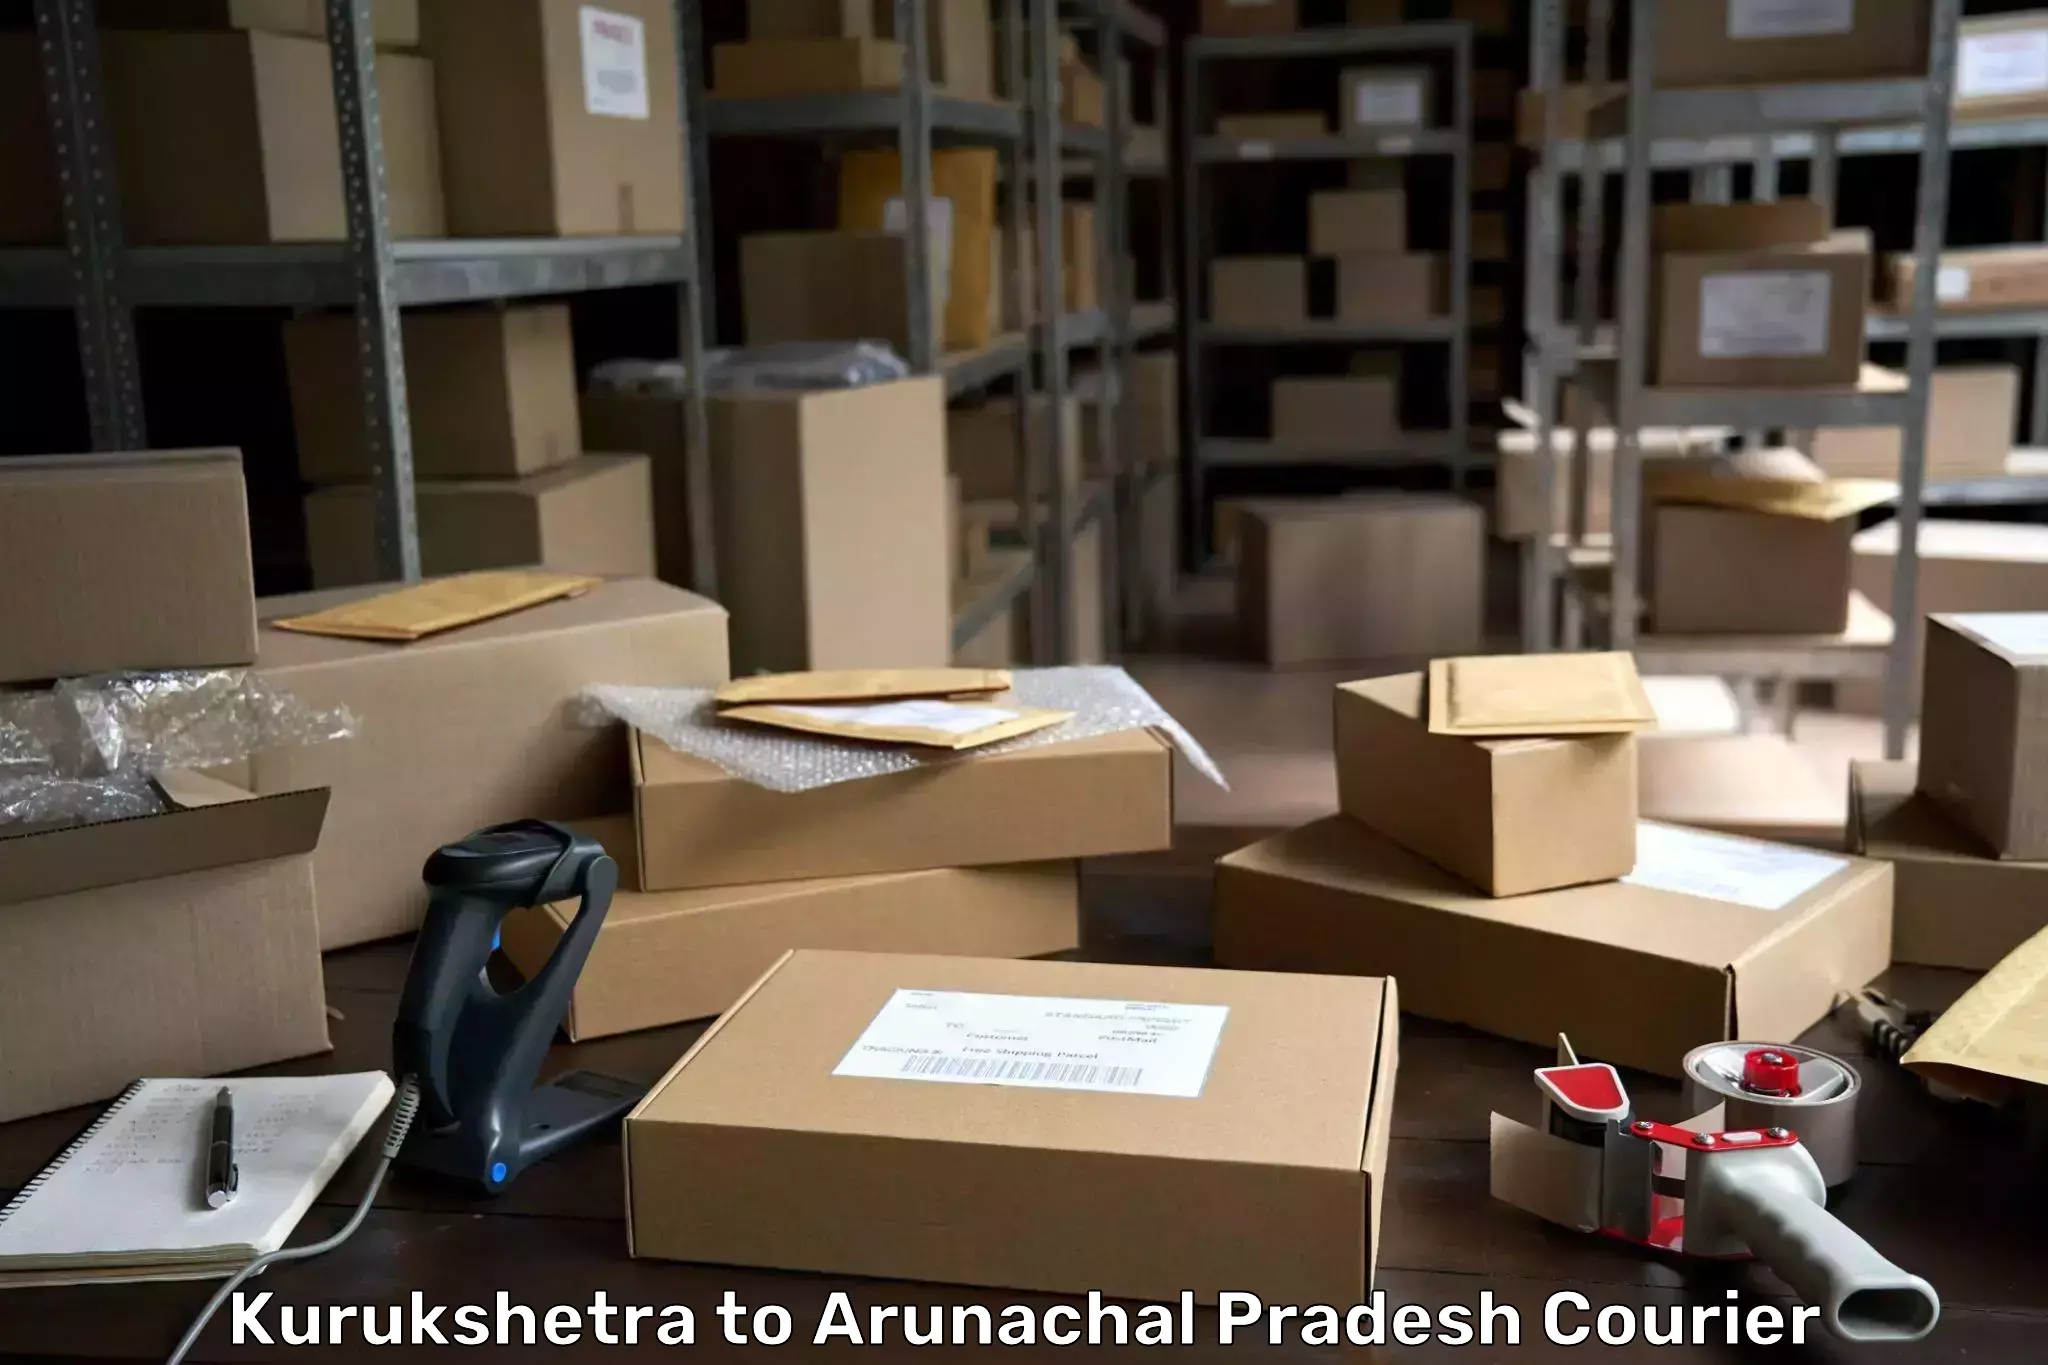 Modern delivery technologies Kurukshetra to Arunachal Pradesh